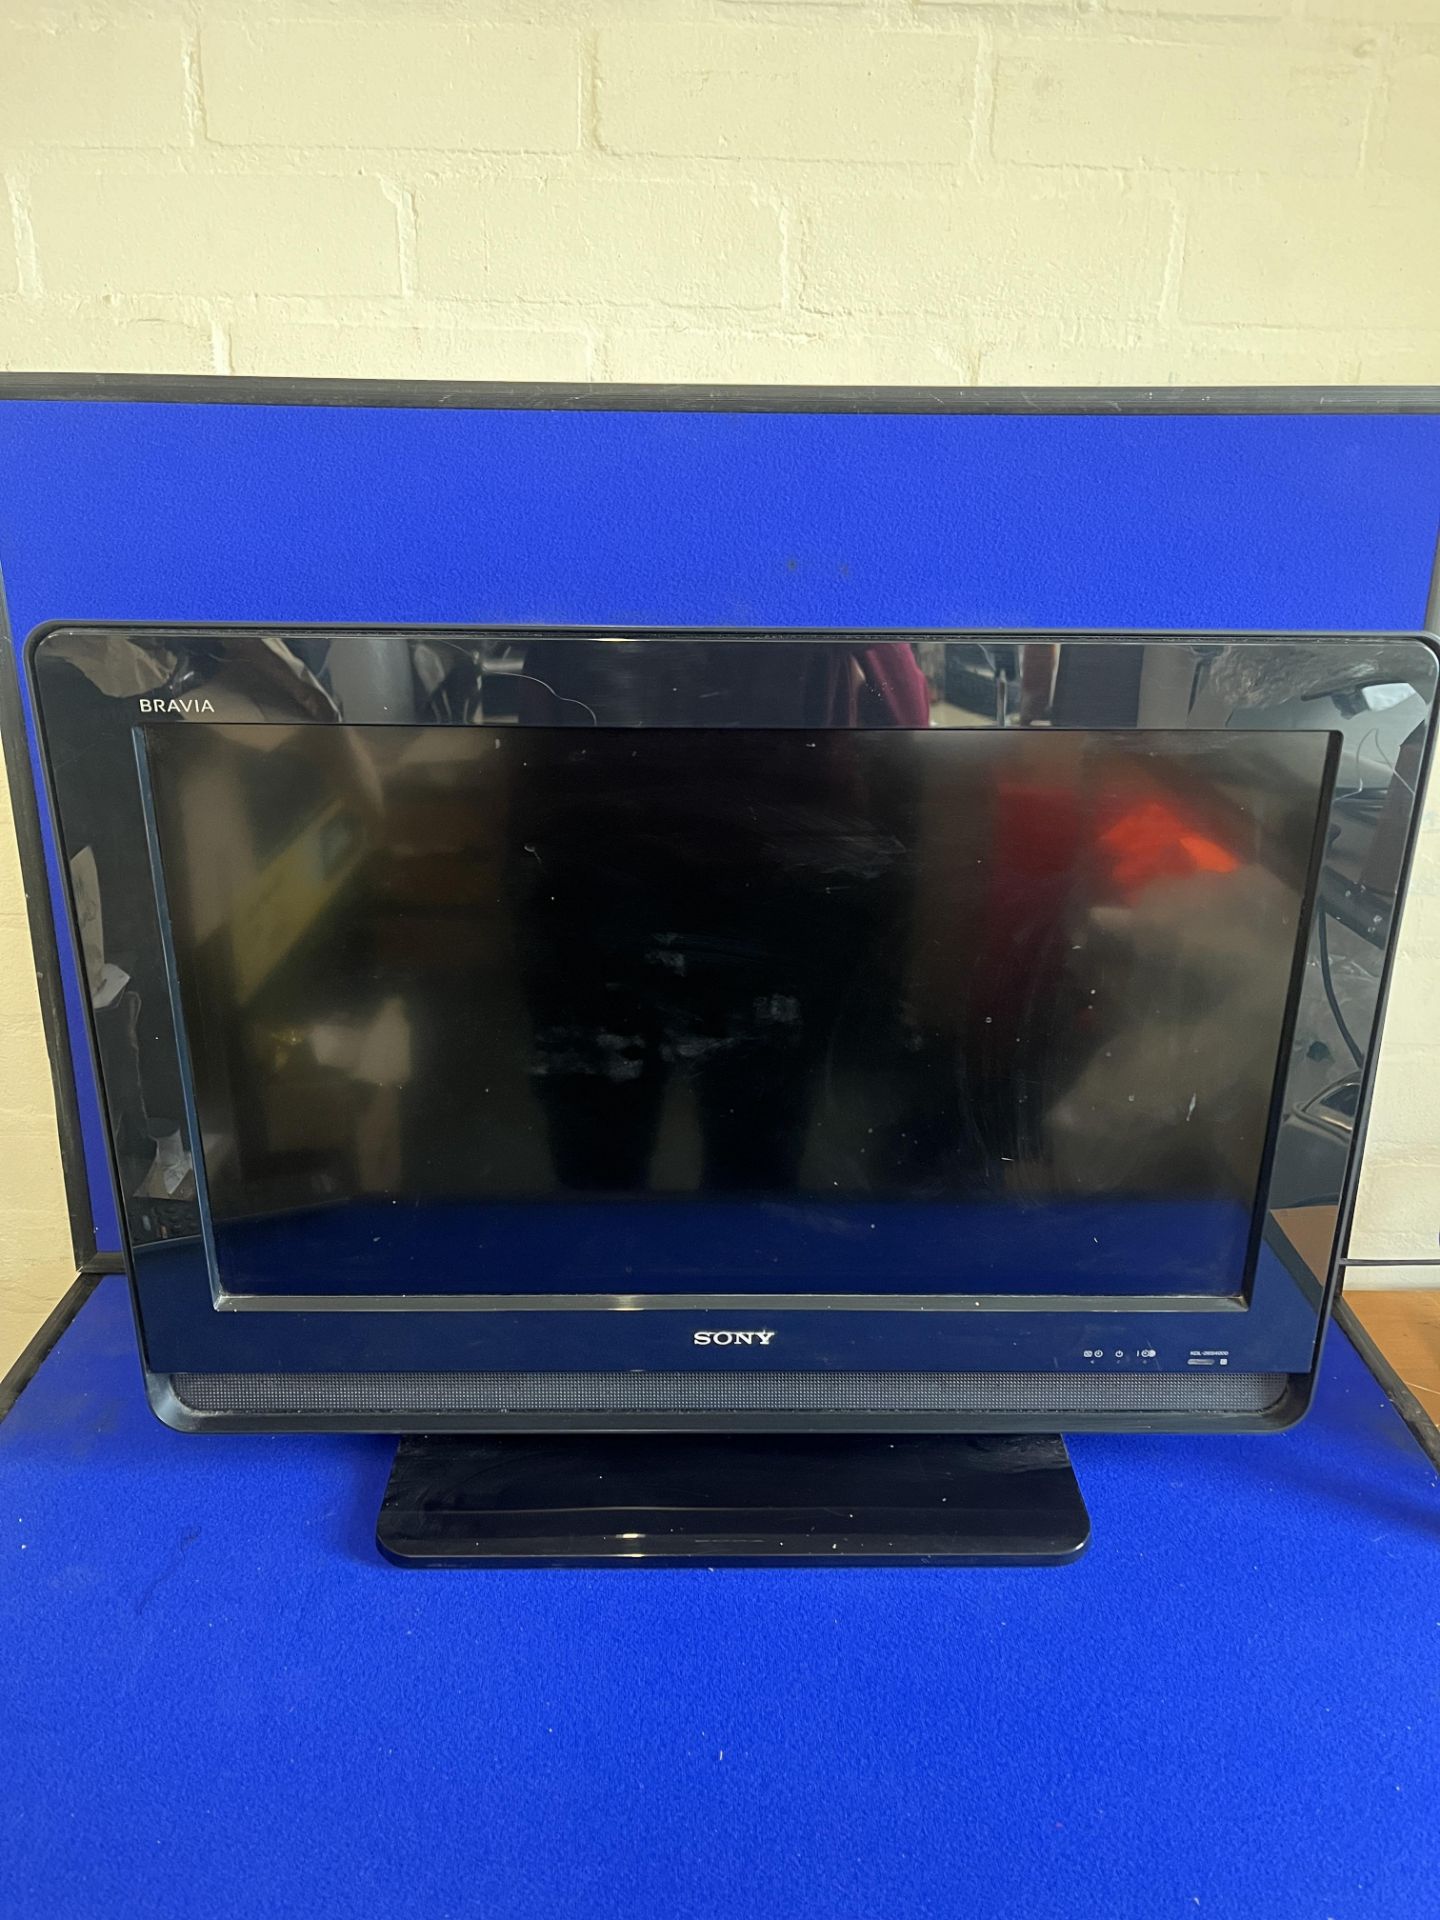 Sony Bravia LCD Colour TV